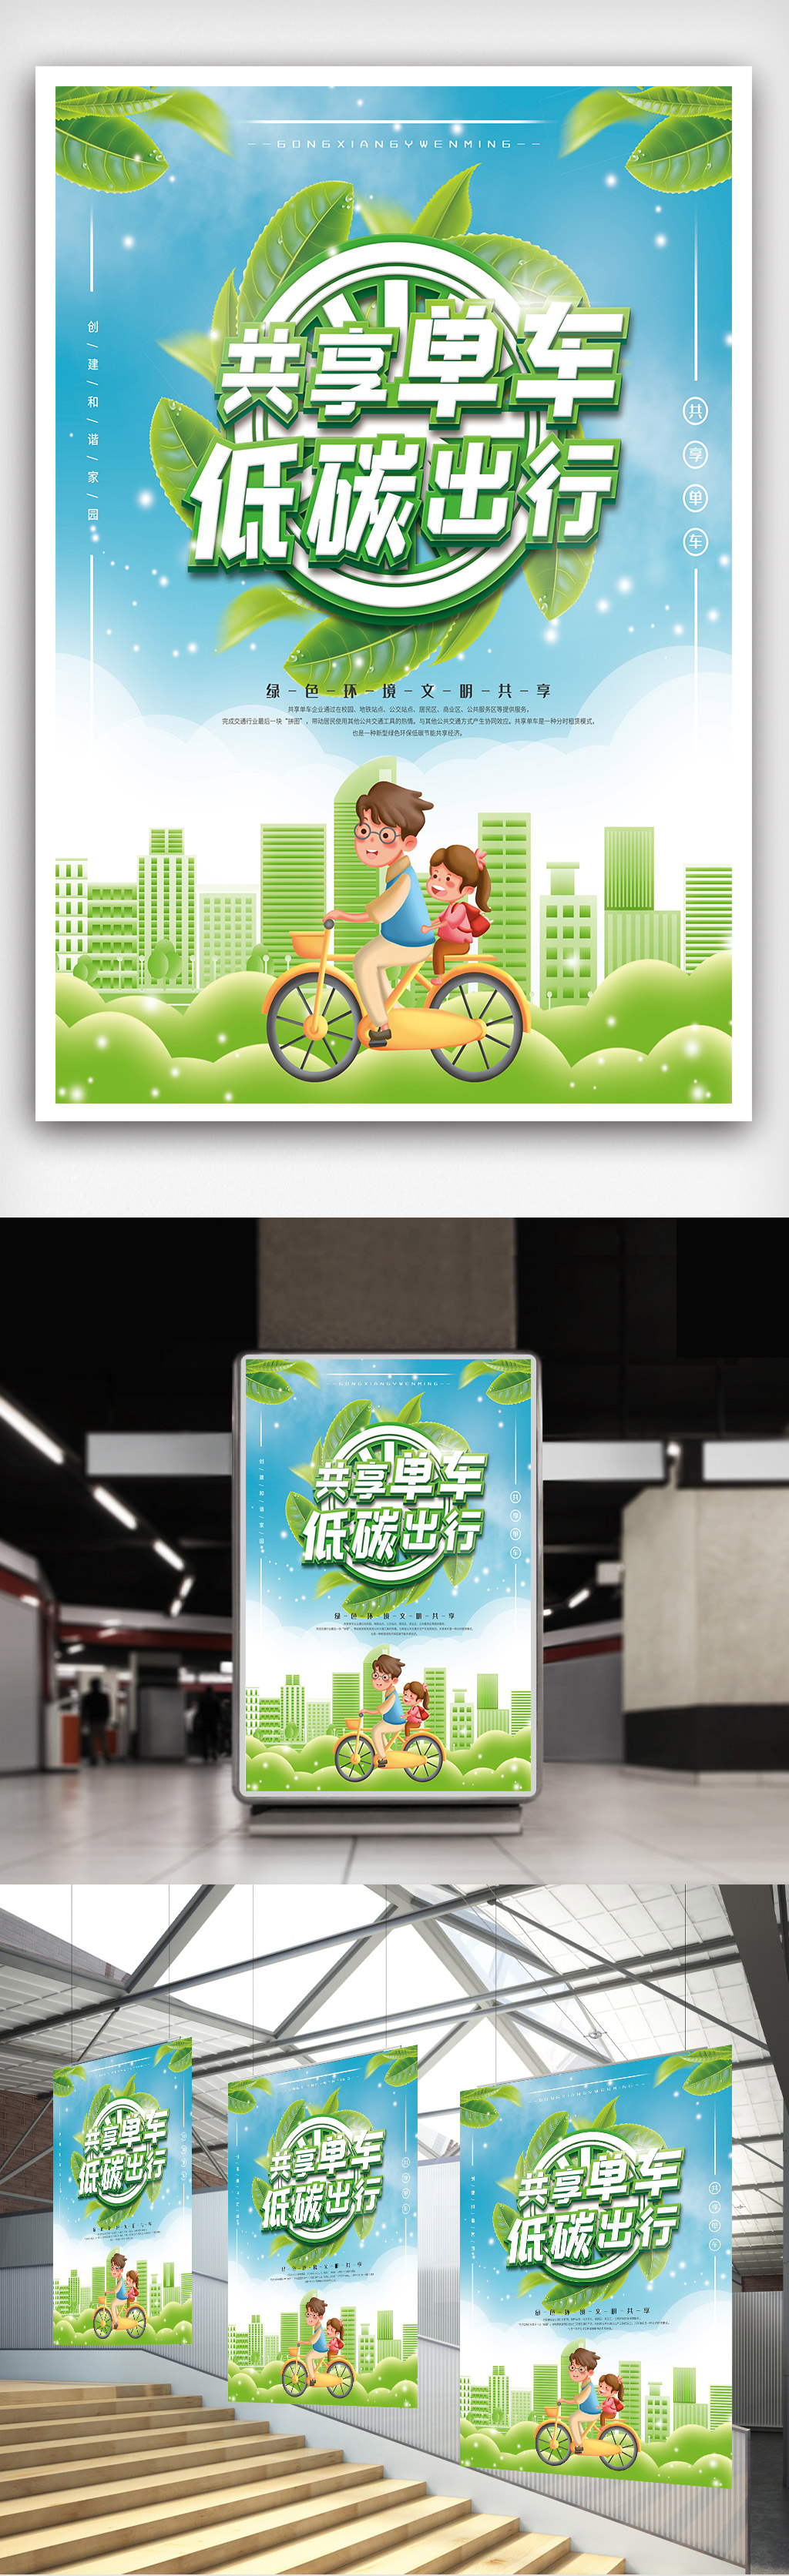 共享单车绿色低碳环保海报